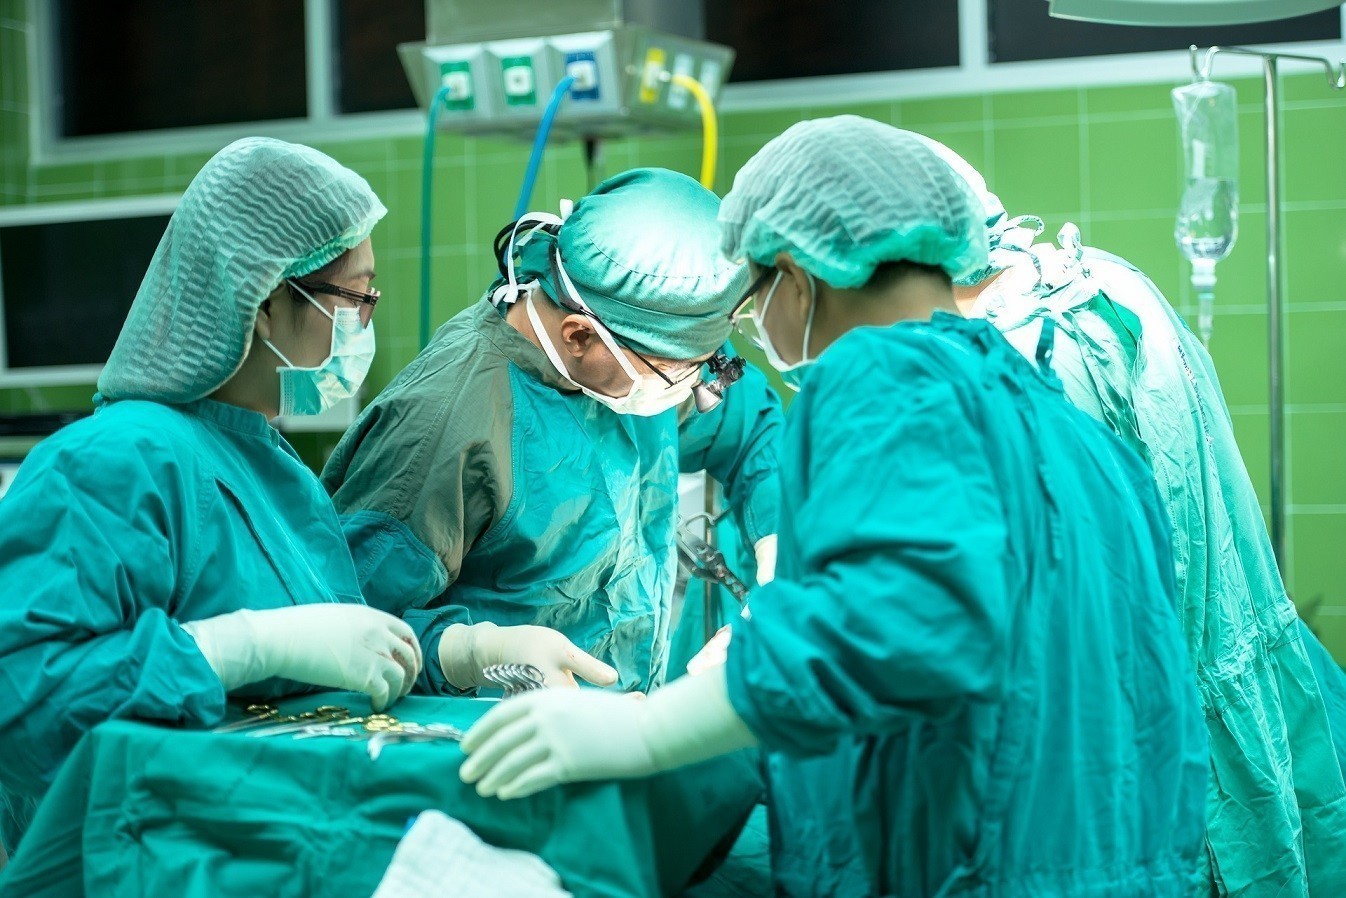 Τεχνητή νοημοσύνη: Η Κίνα παρουσίασε ιατρικό chatbot για χειρουργούς (tweet)